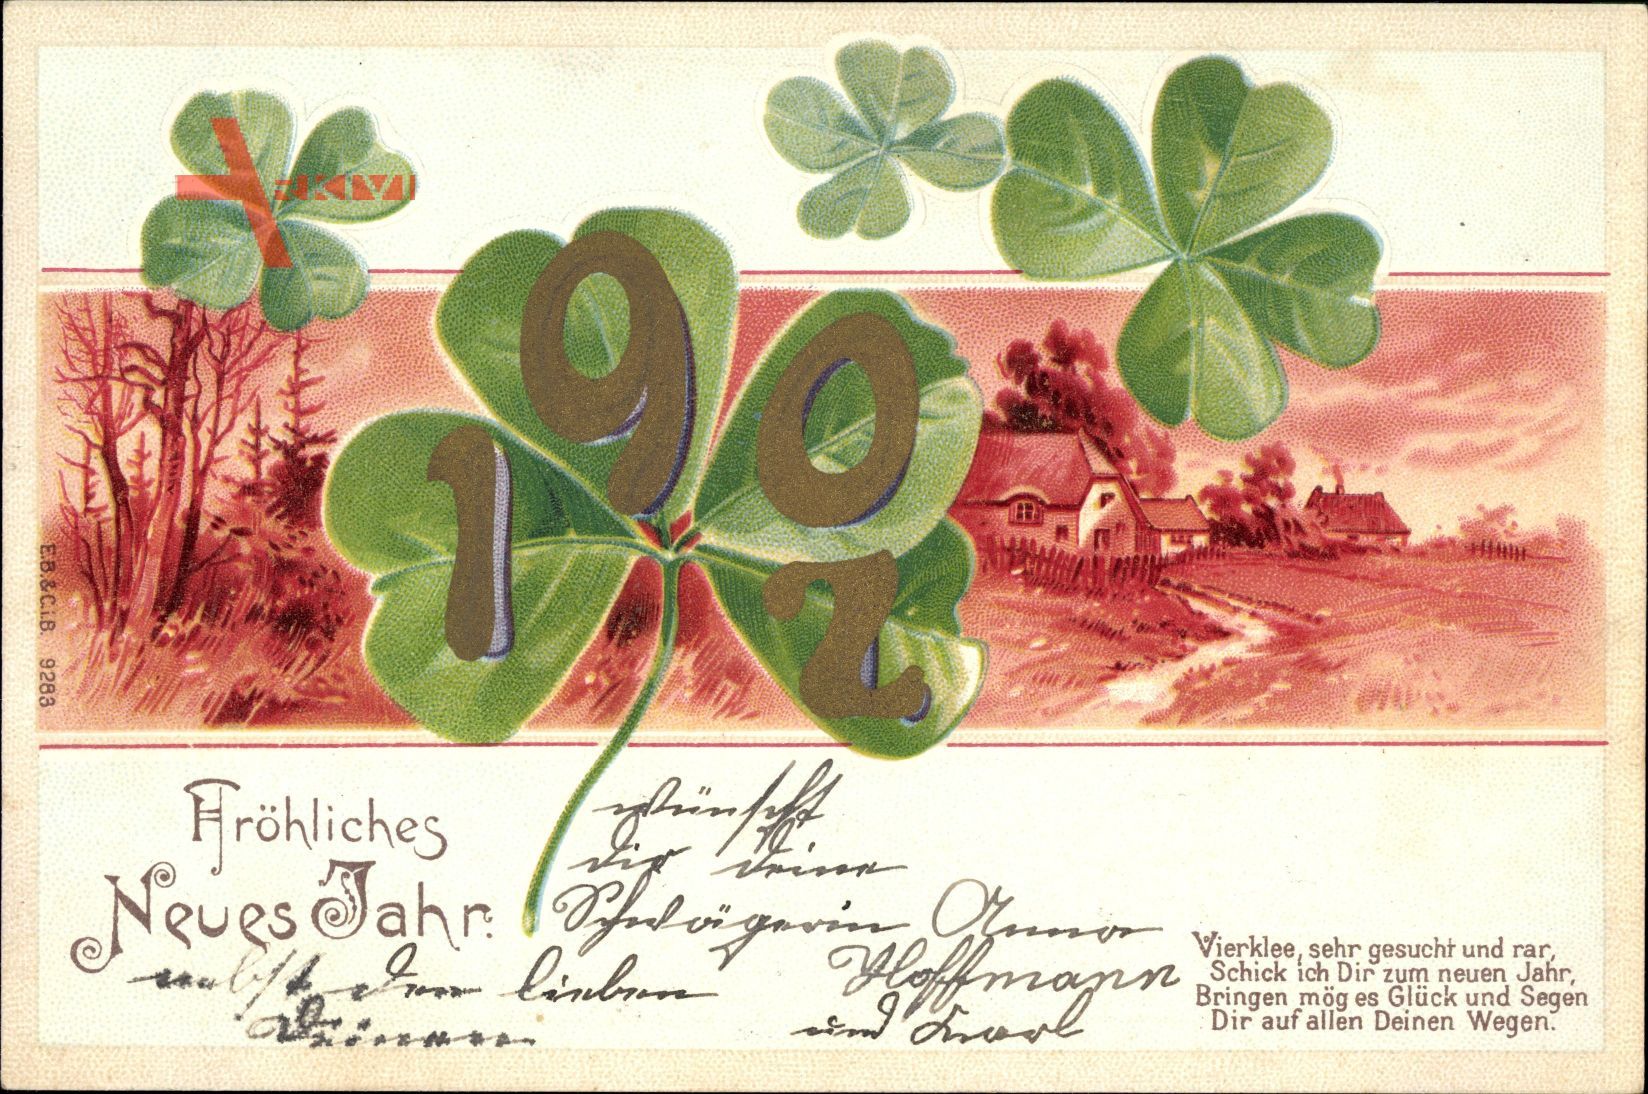 Glückwunsch Neujahr, Jahreszahl 1902, Kleeblätter, Kitsch